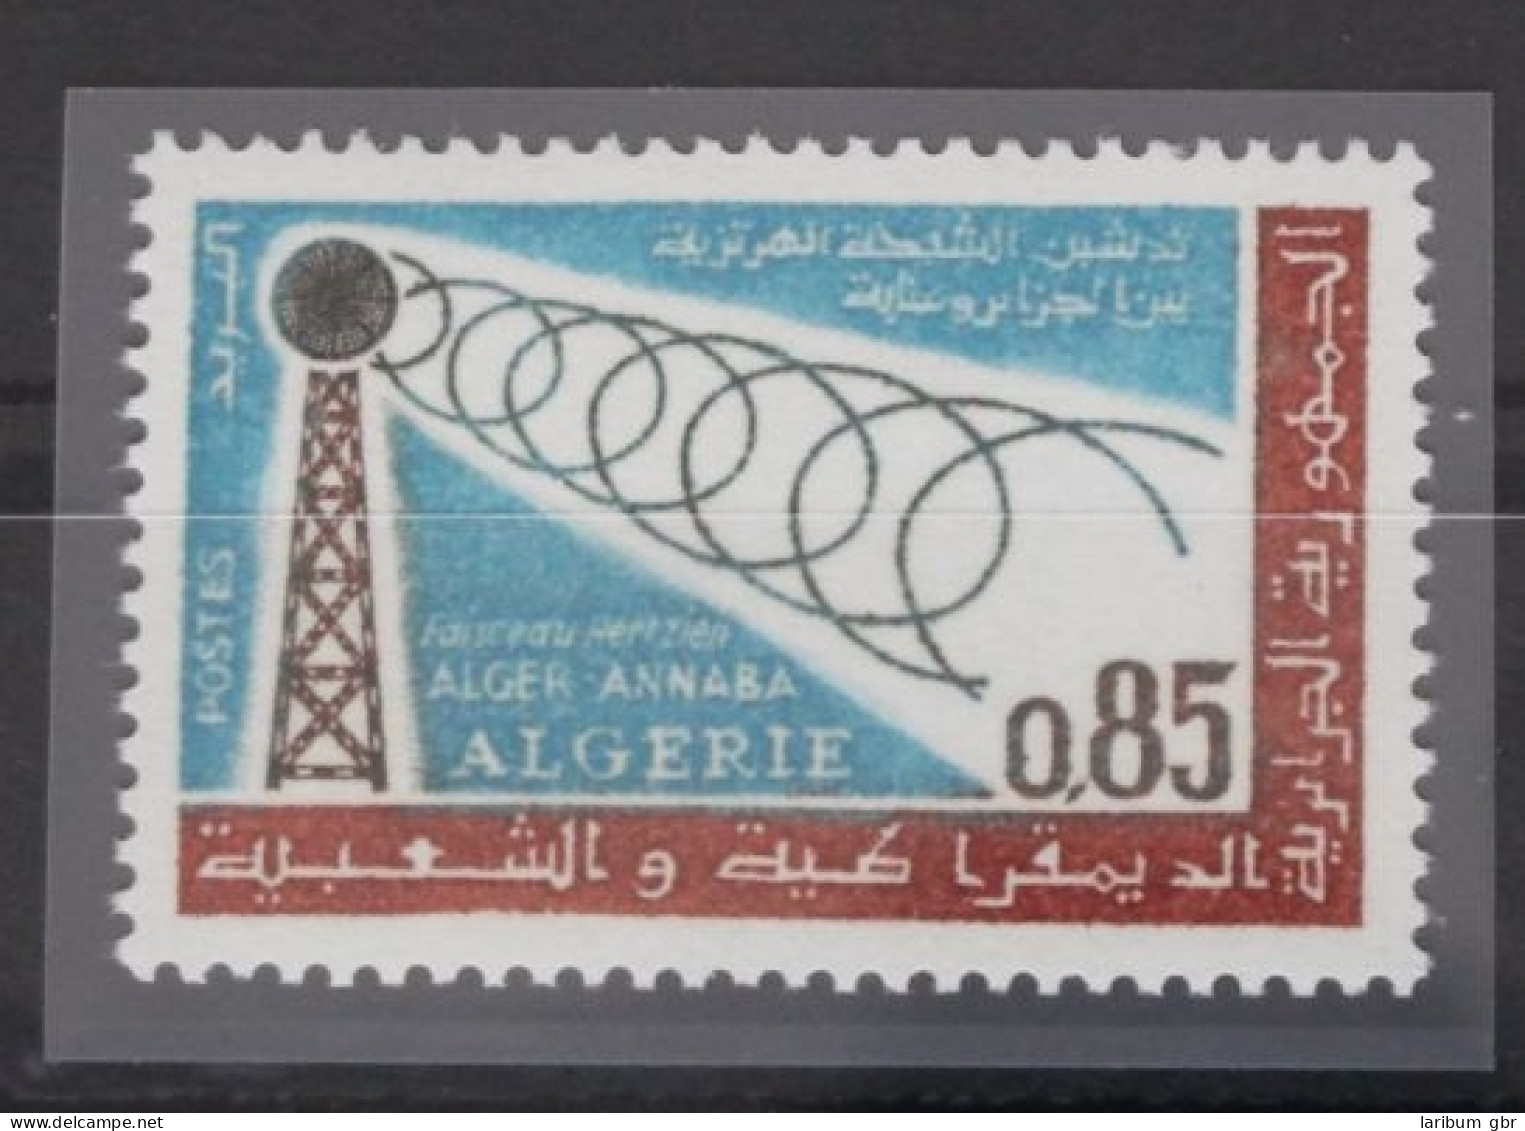 Algerien 430 Postfrisch #FT735 - Algeria (1962-...)